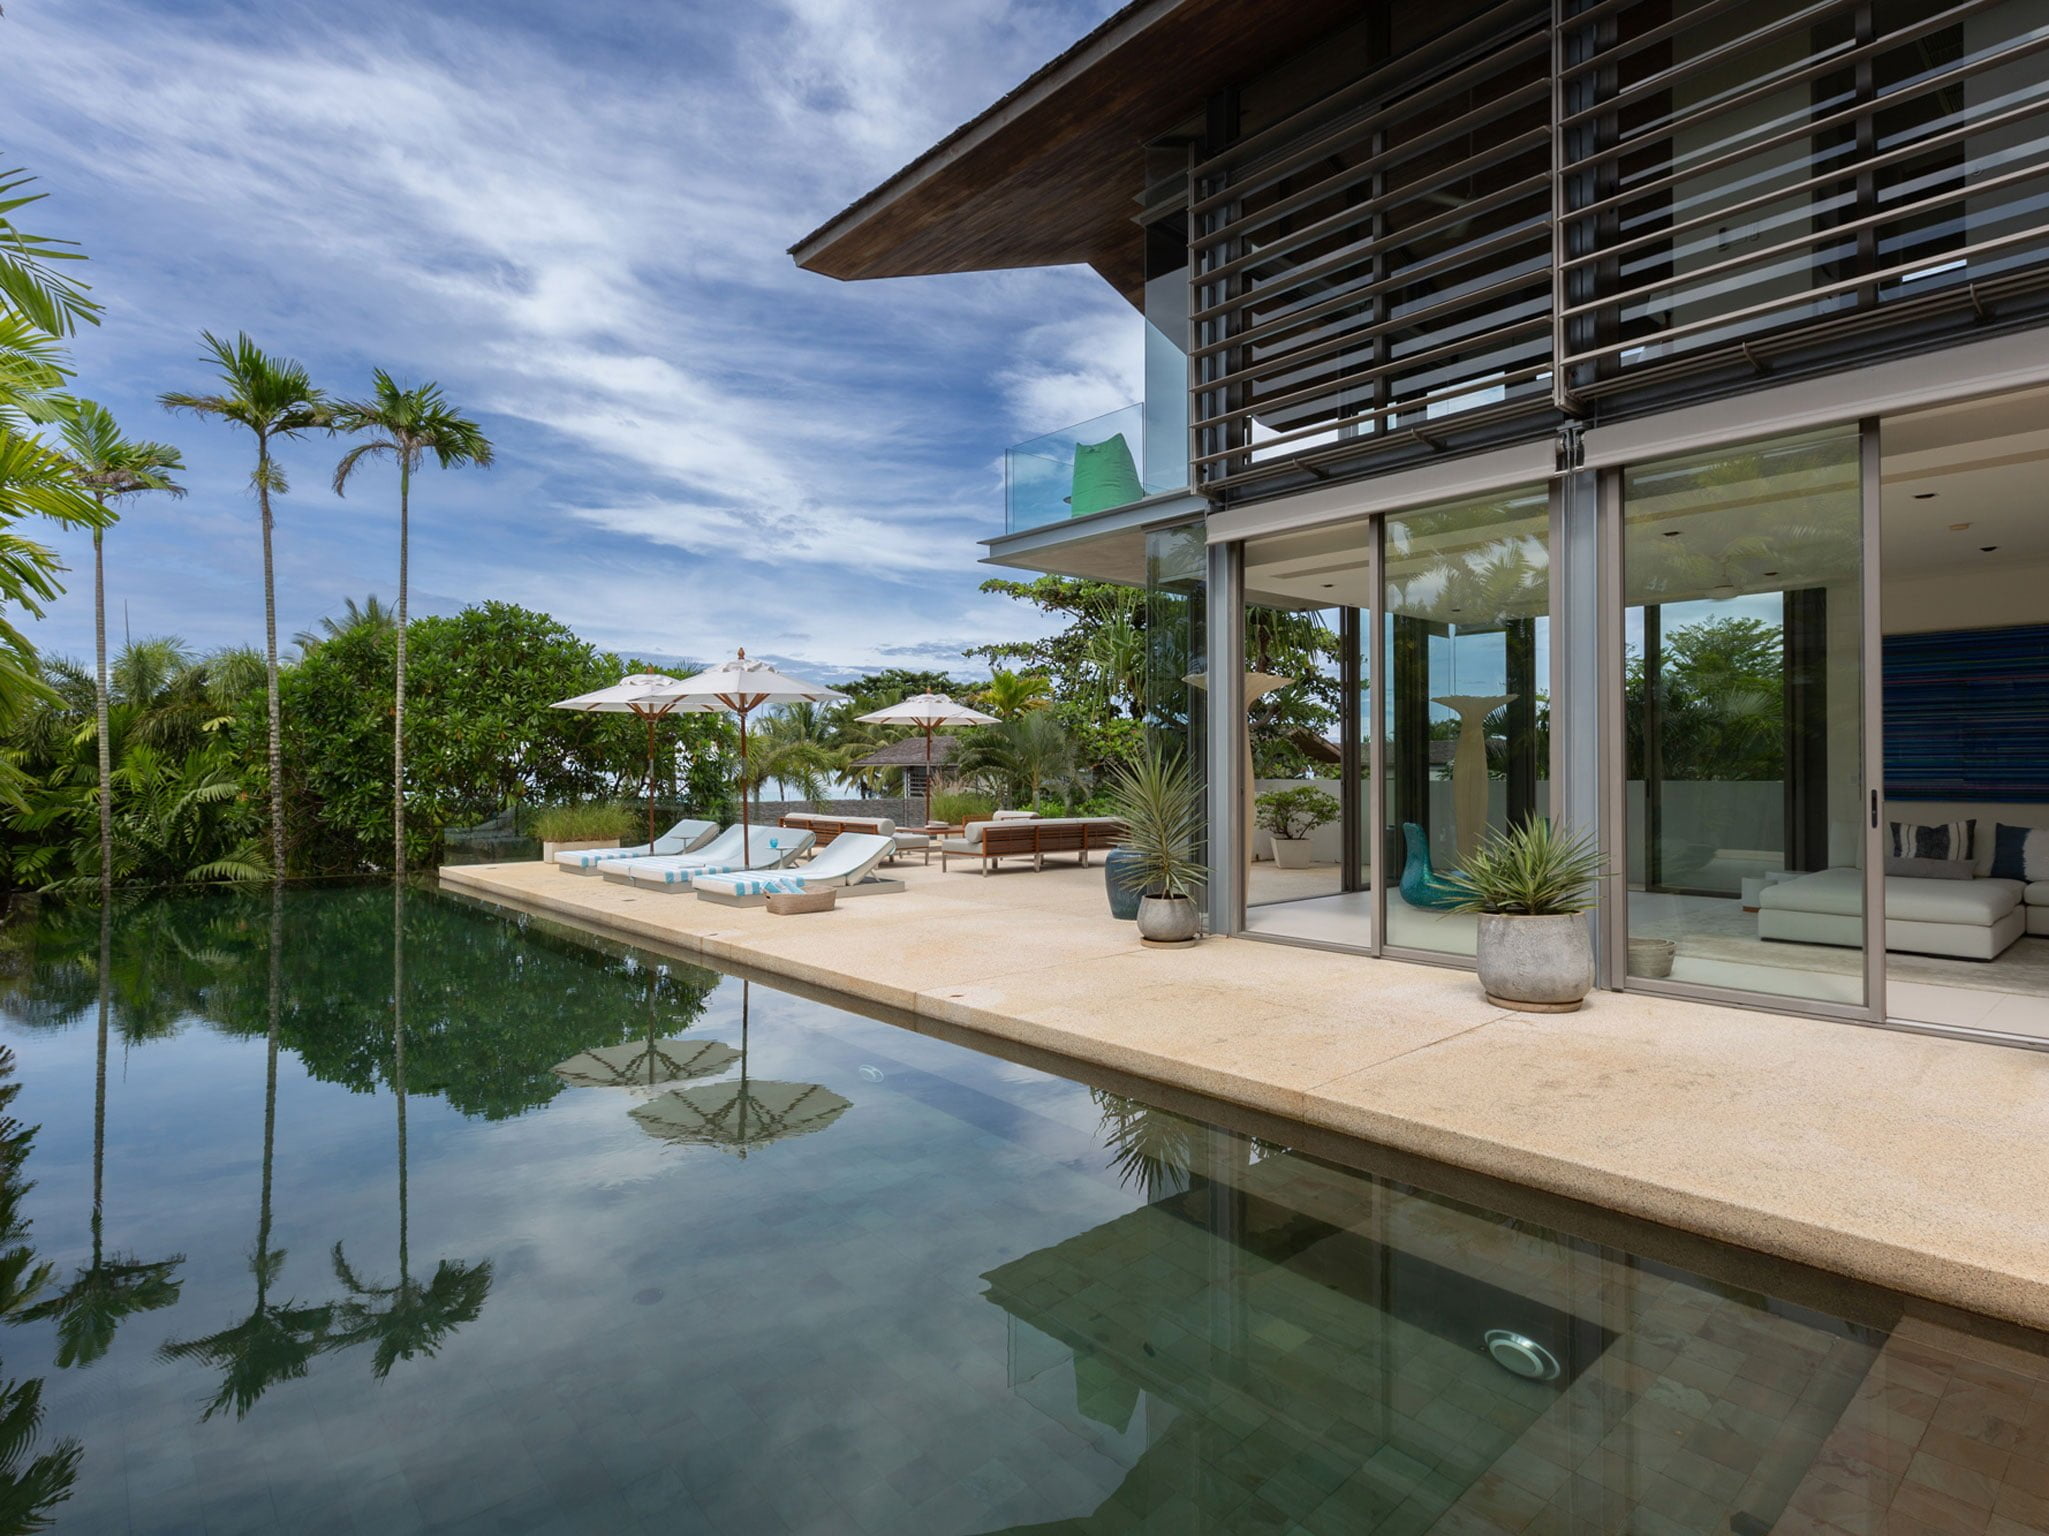 002 villa aqua pool deck